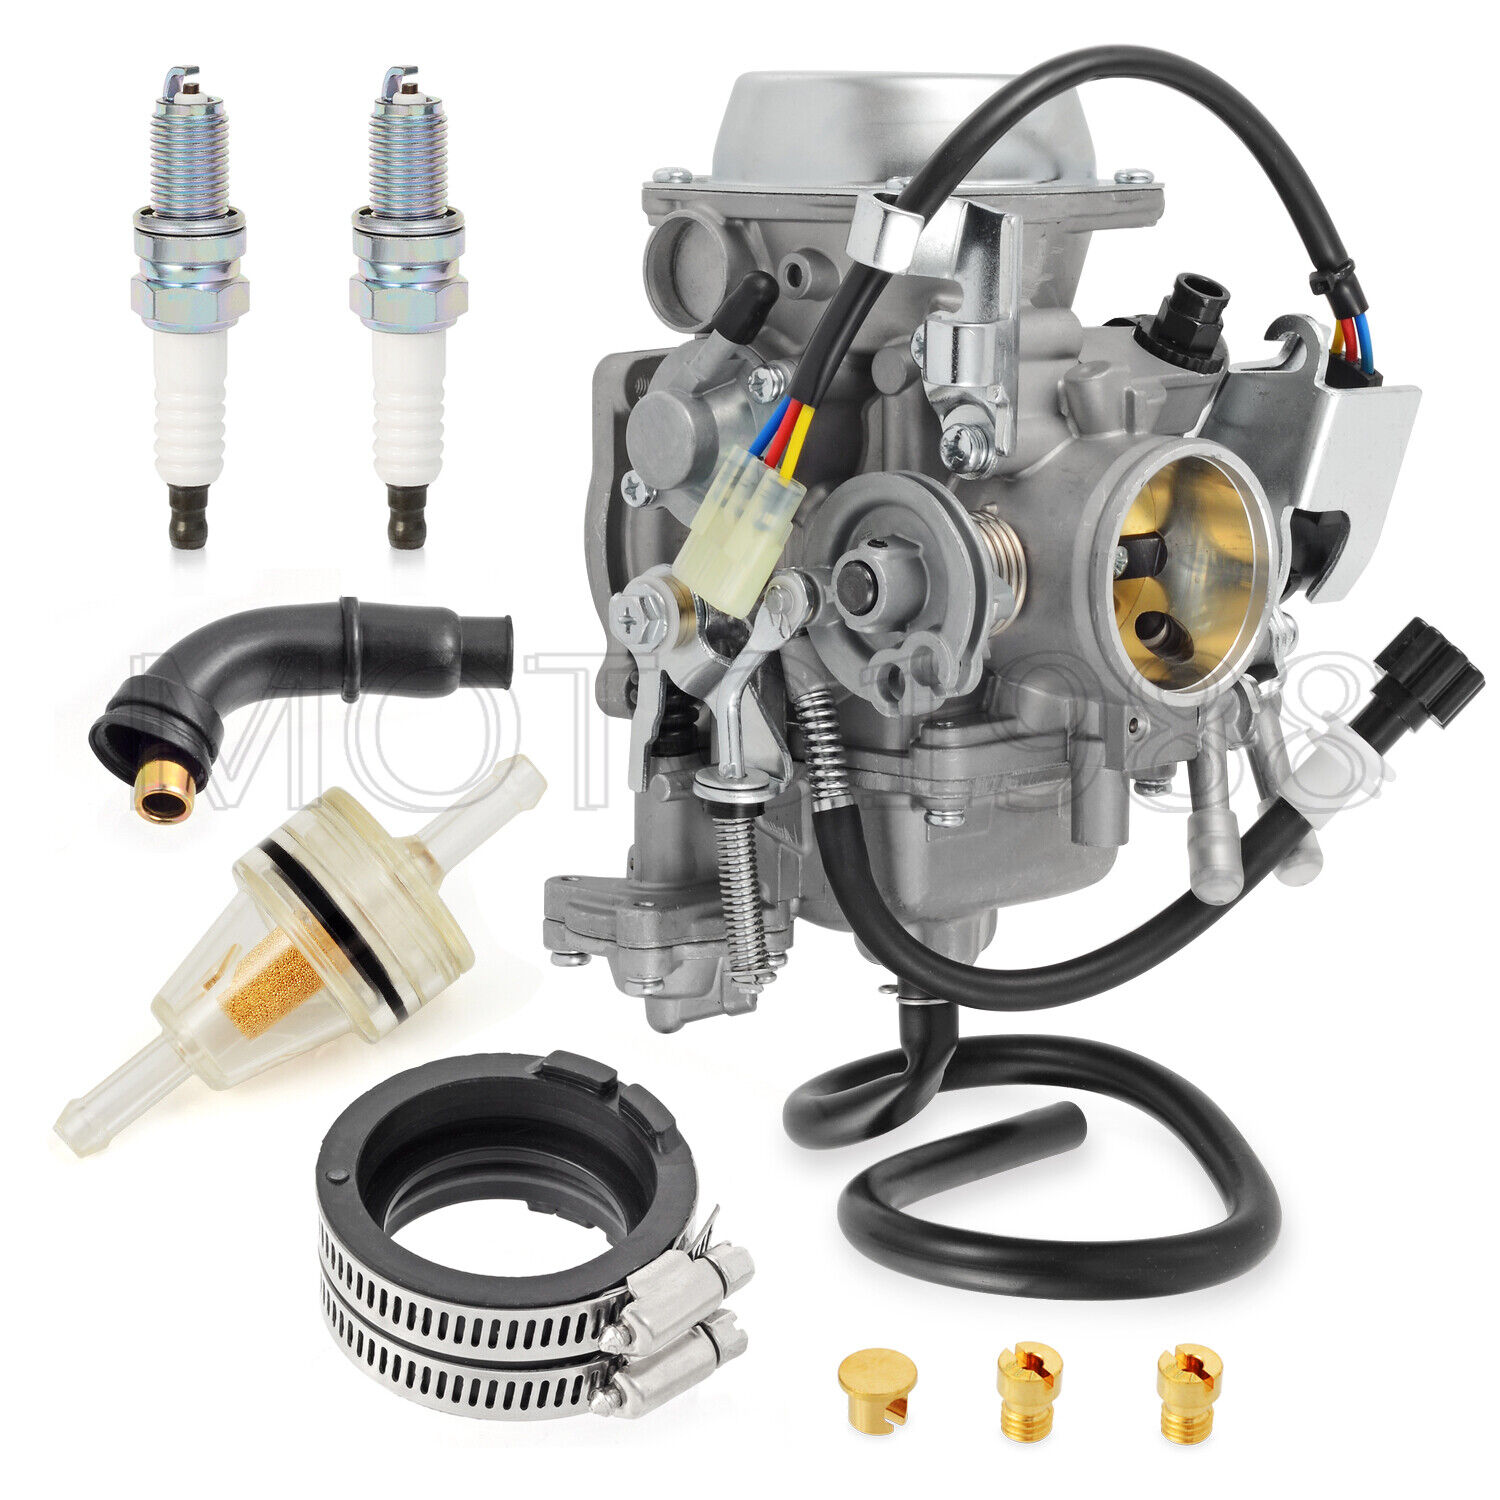 Carburetor & Intake Manifold for Honda VTX1300 C/R/S/T 2003 2004 2005-2009 Carb